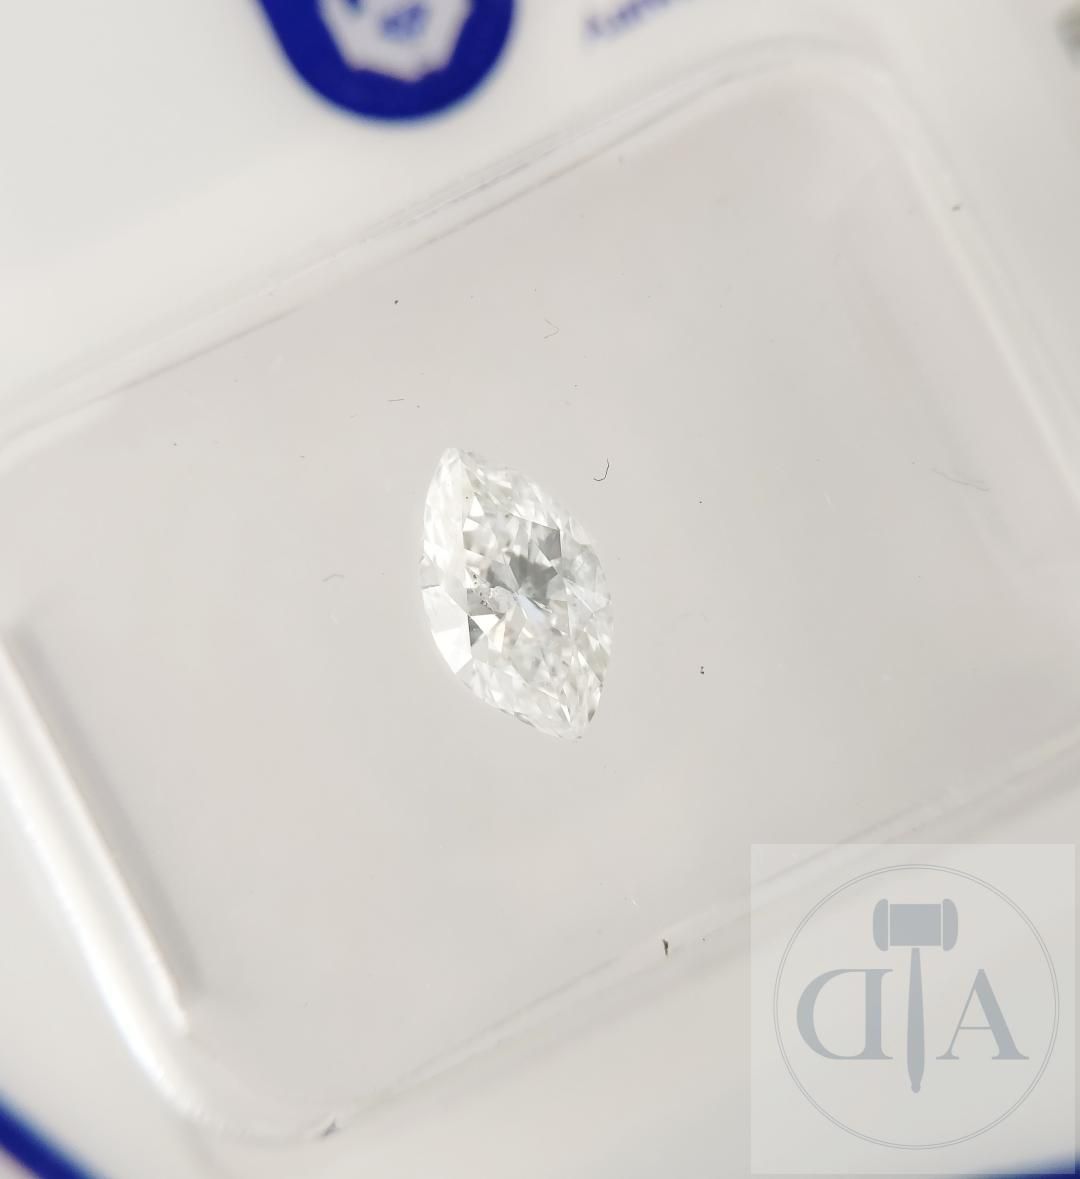 Null 0.44 克拉 ALGT 认证钻石

- ALGT 证书编号：38893321 
- 形状榄尖形
- 克拉重量： 0.44 克拉 
- 颜色： D 
&hellip;